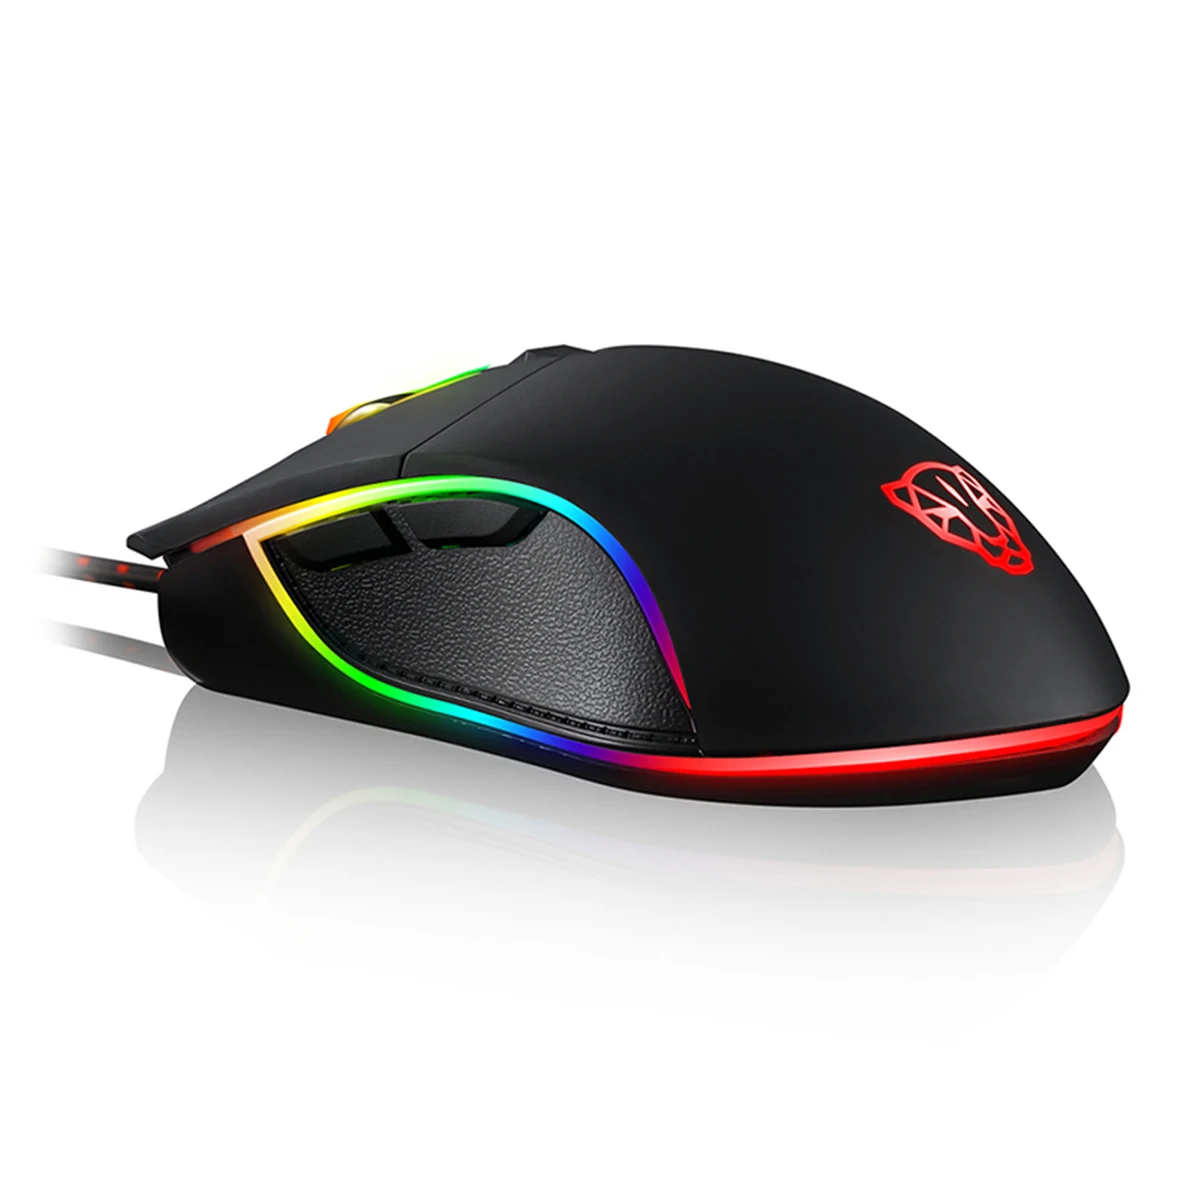 Motospeed светящийся RGB светодиодный оптическая игровая мышь Cata мышь Мыши 1,8 м USB Проводная Регулируемая 4 уровня Макс. Разрешение 3500 dpi мыши